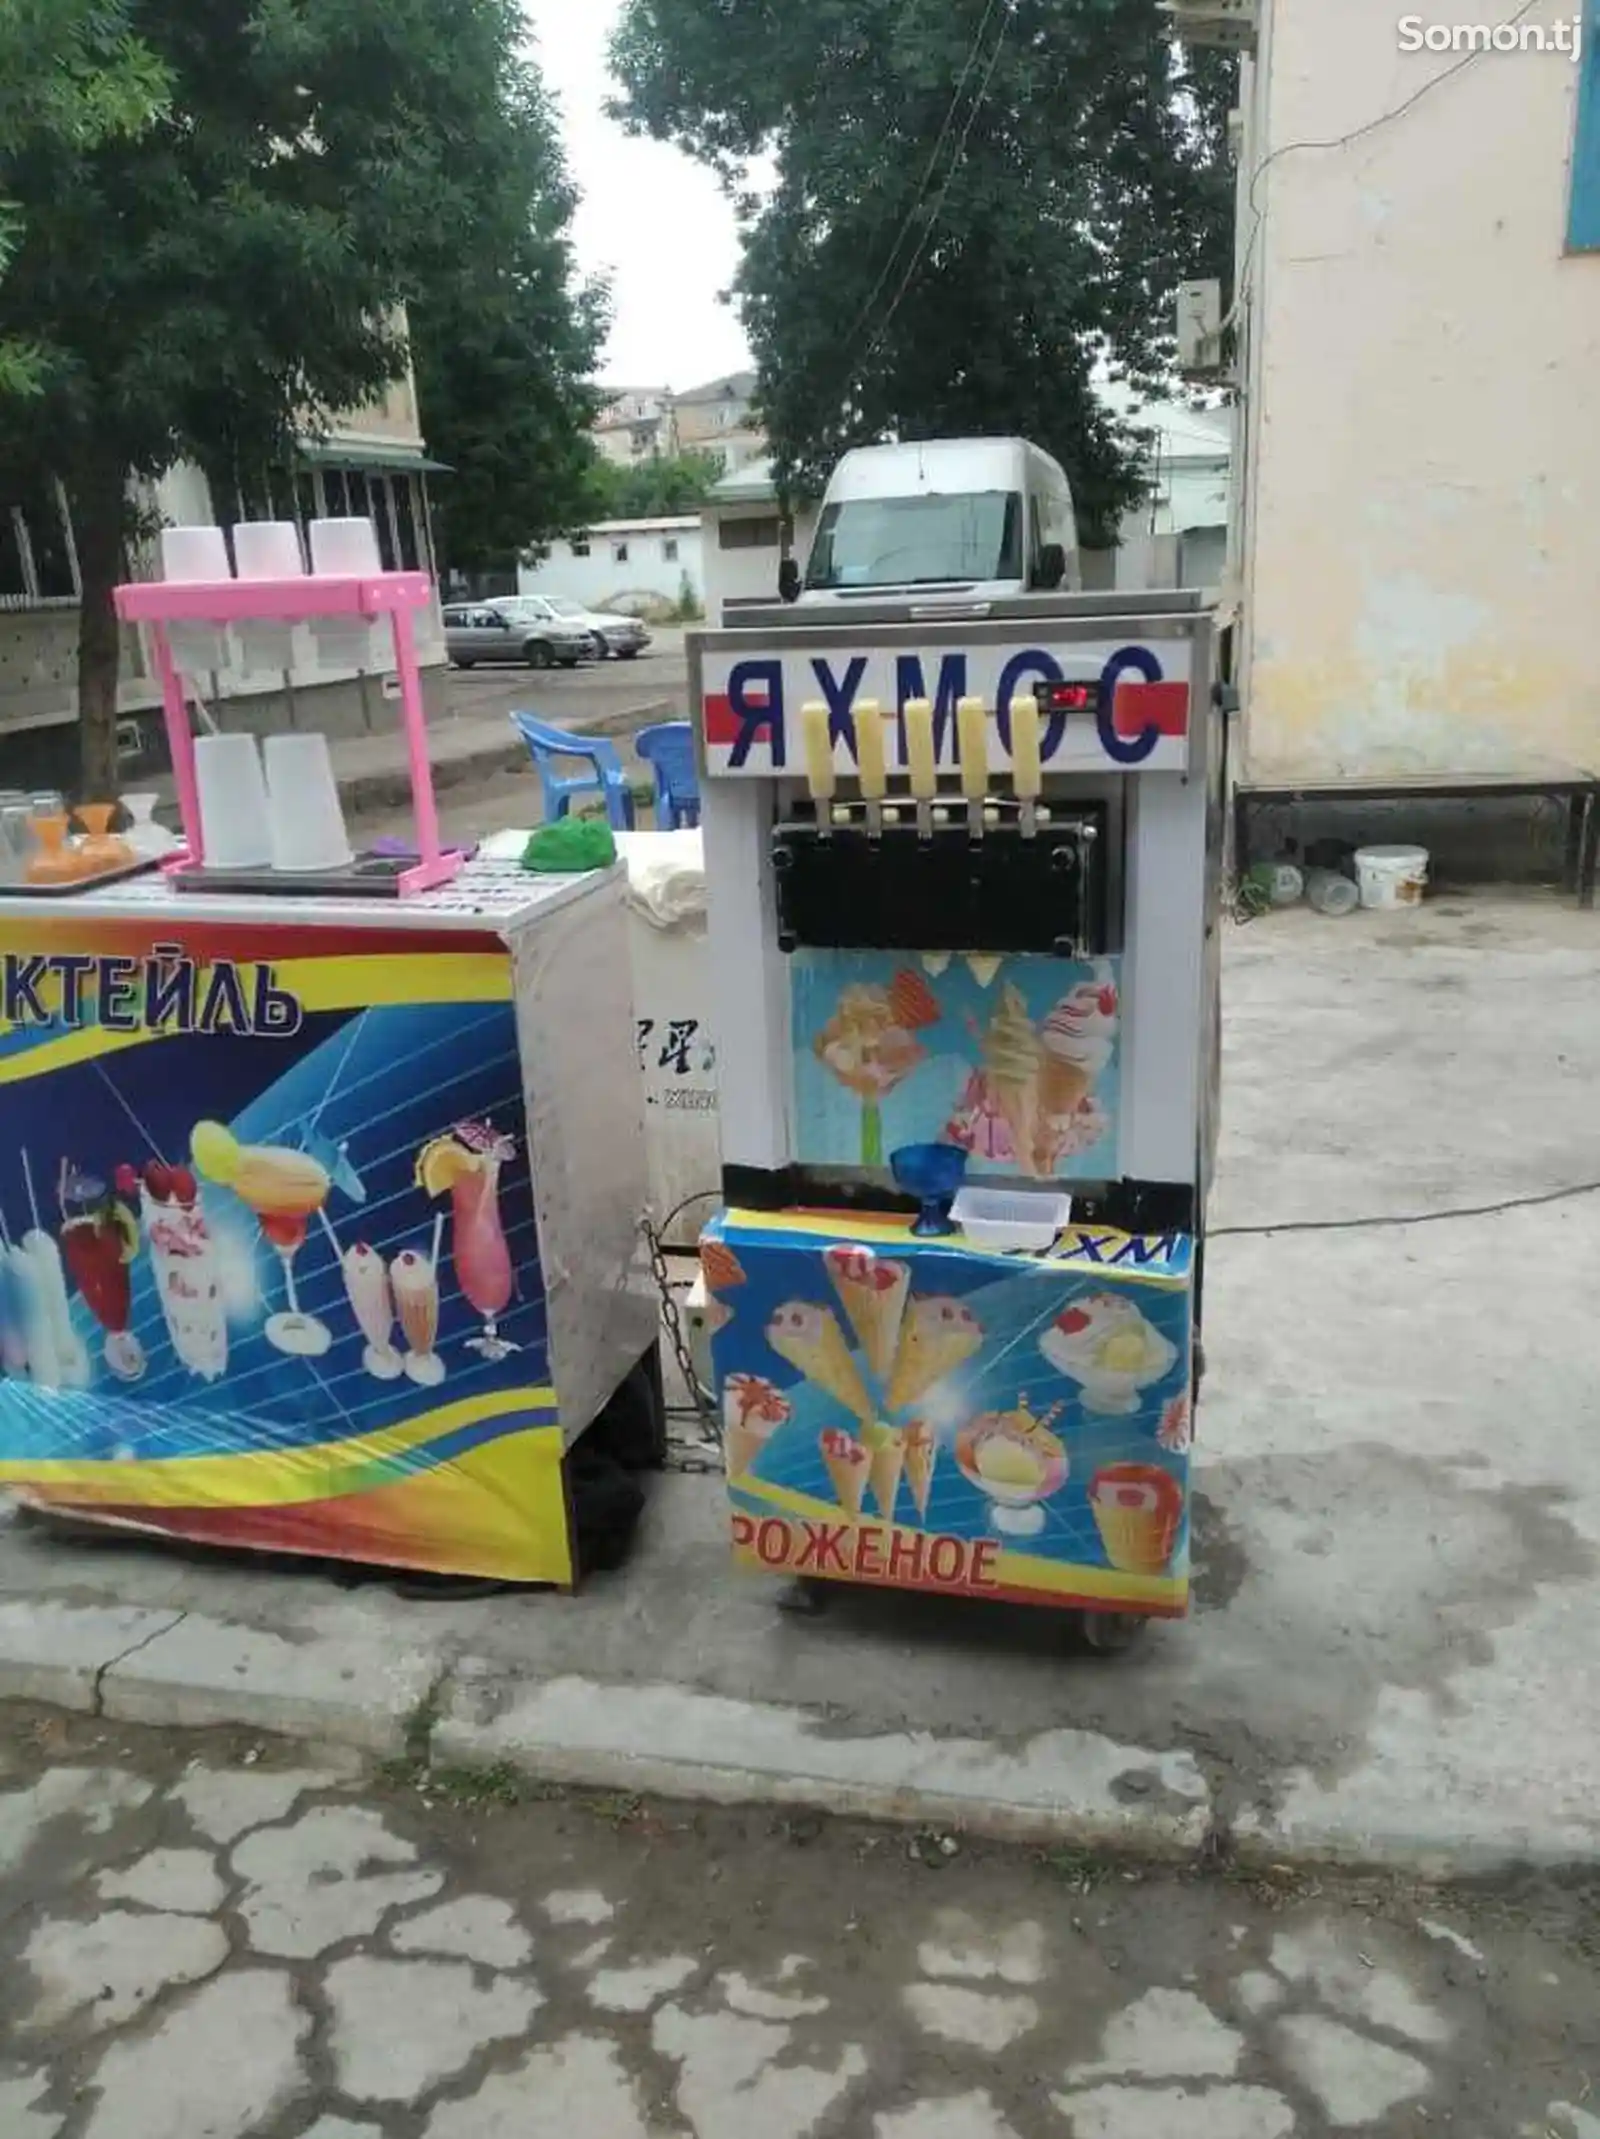 Комплект оборудования для продажи мороженого и коктейлей-2